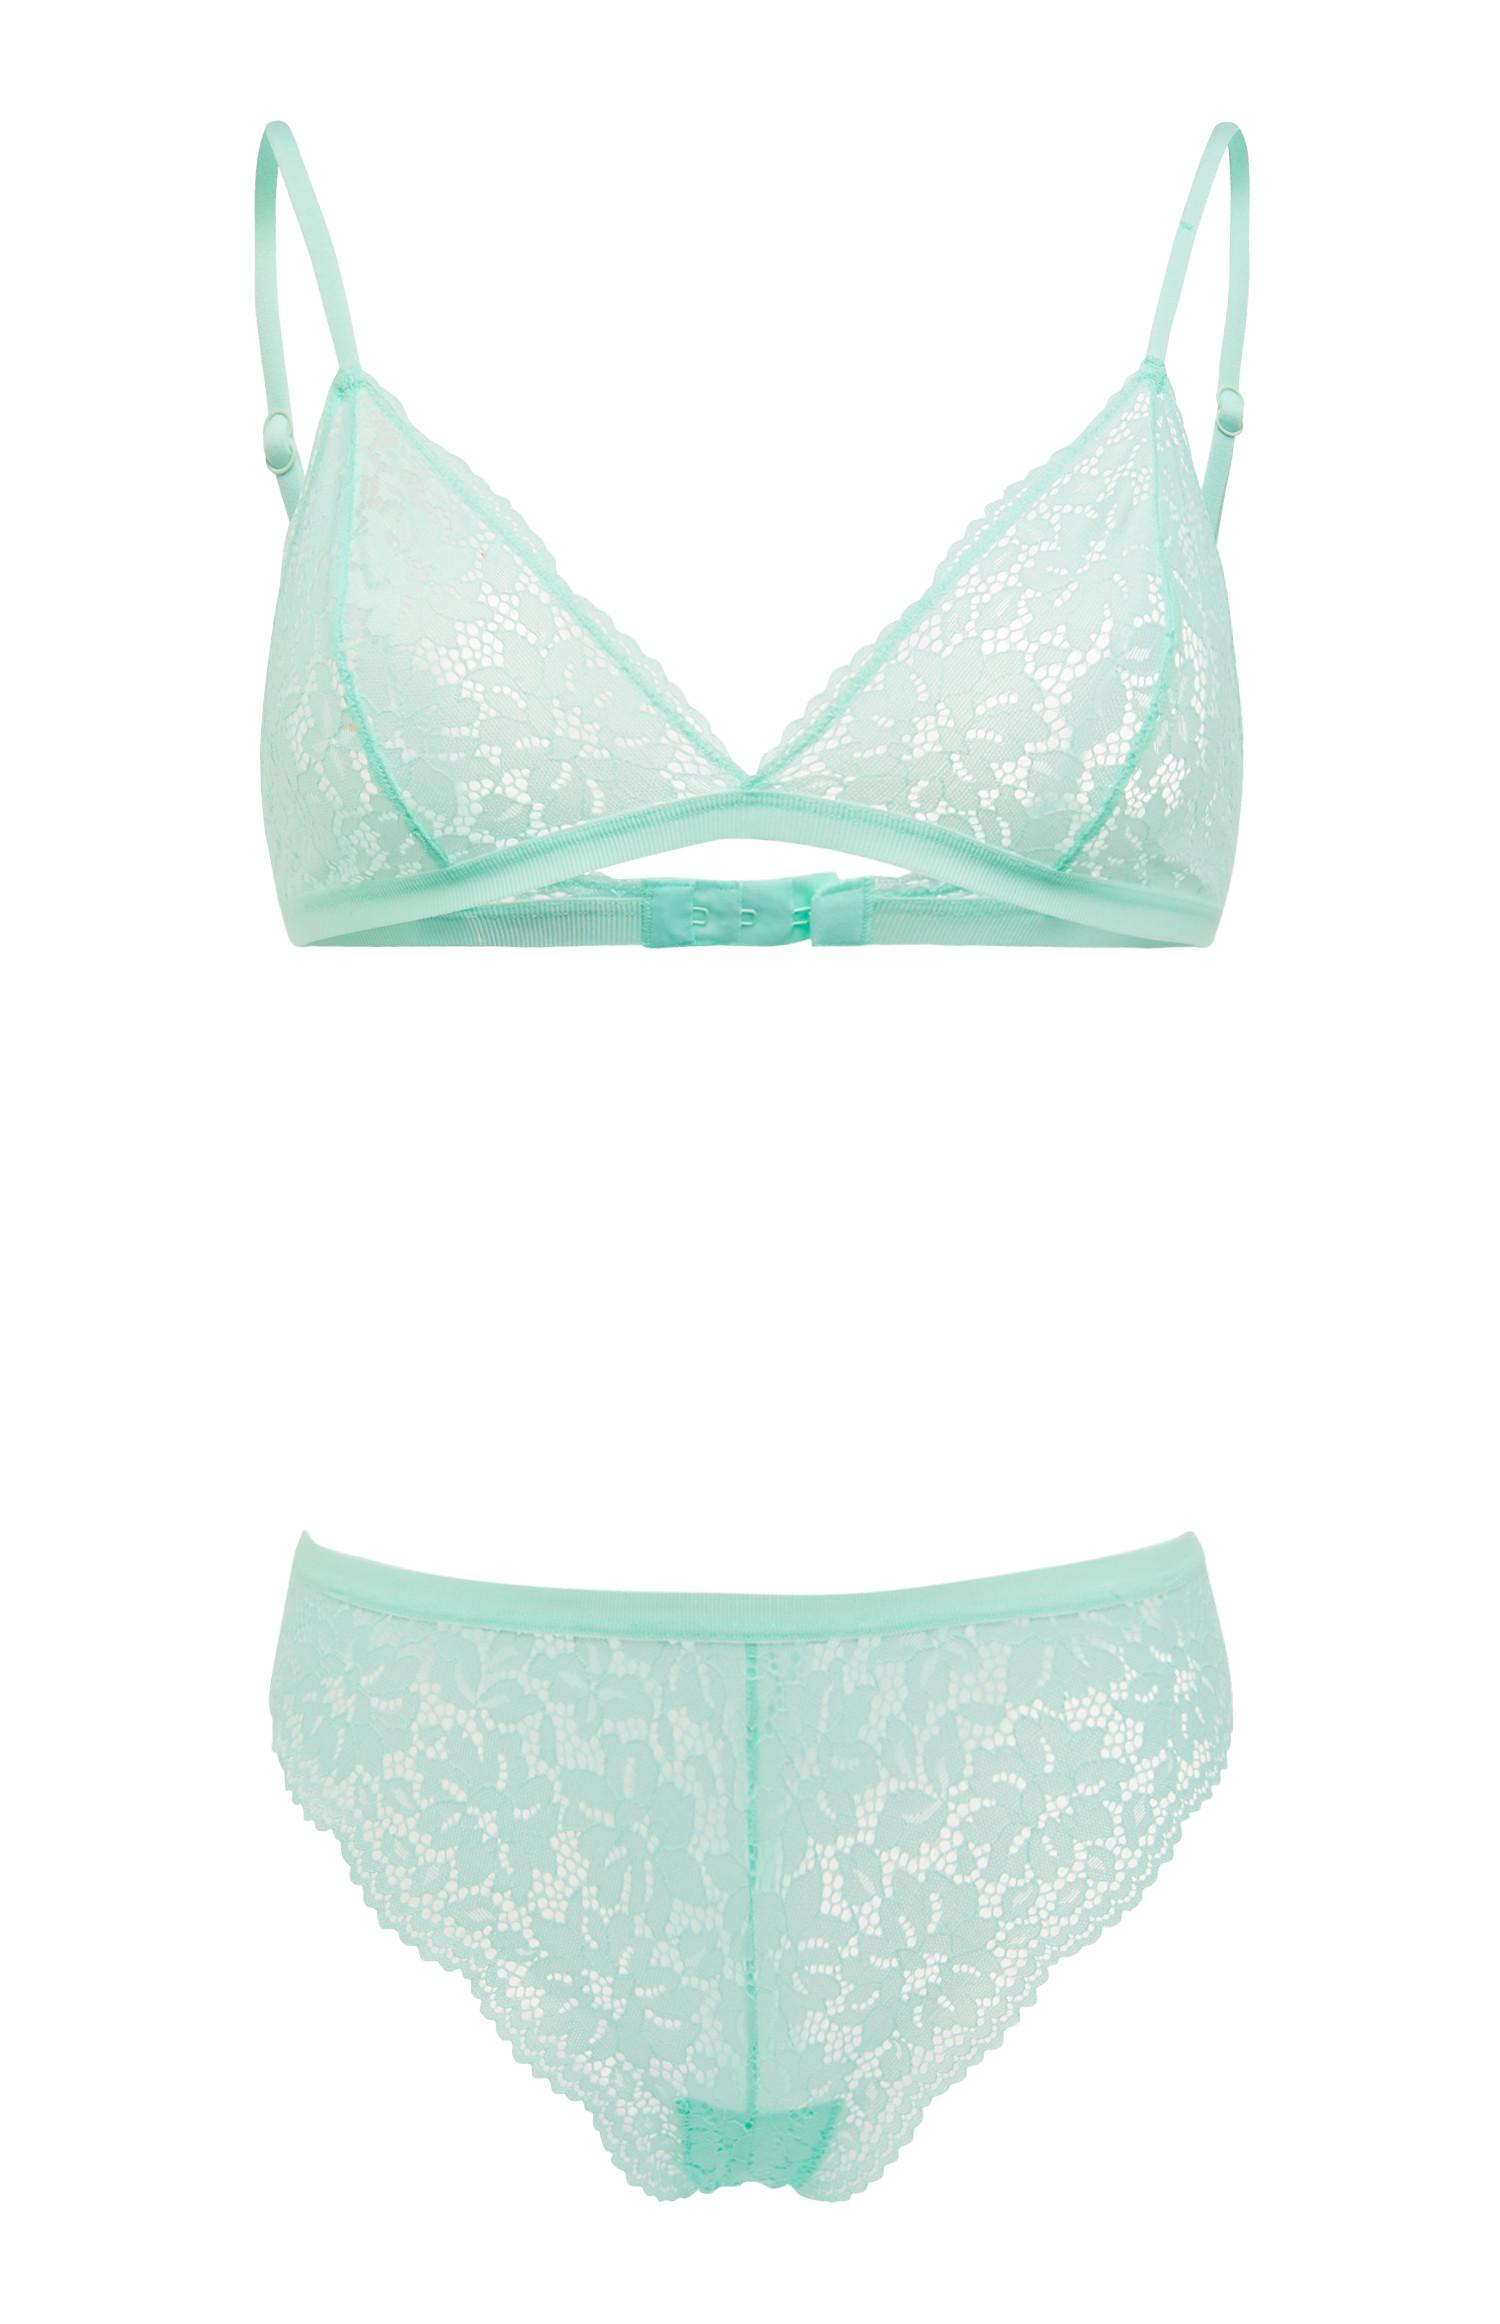 Mint Green Lace Triangle Lingerie Set | Lingerie & Underwear Sets ...